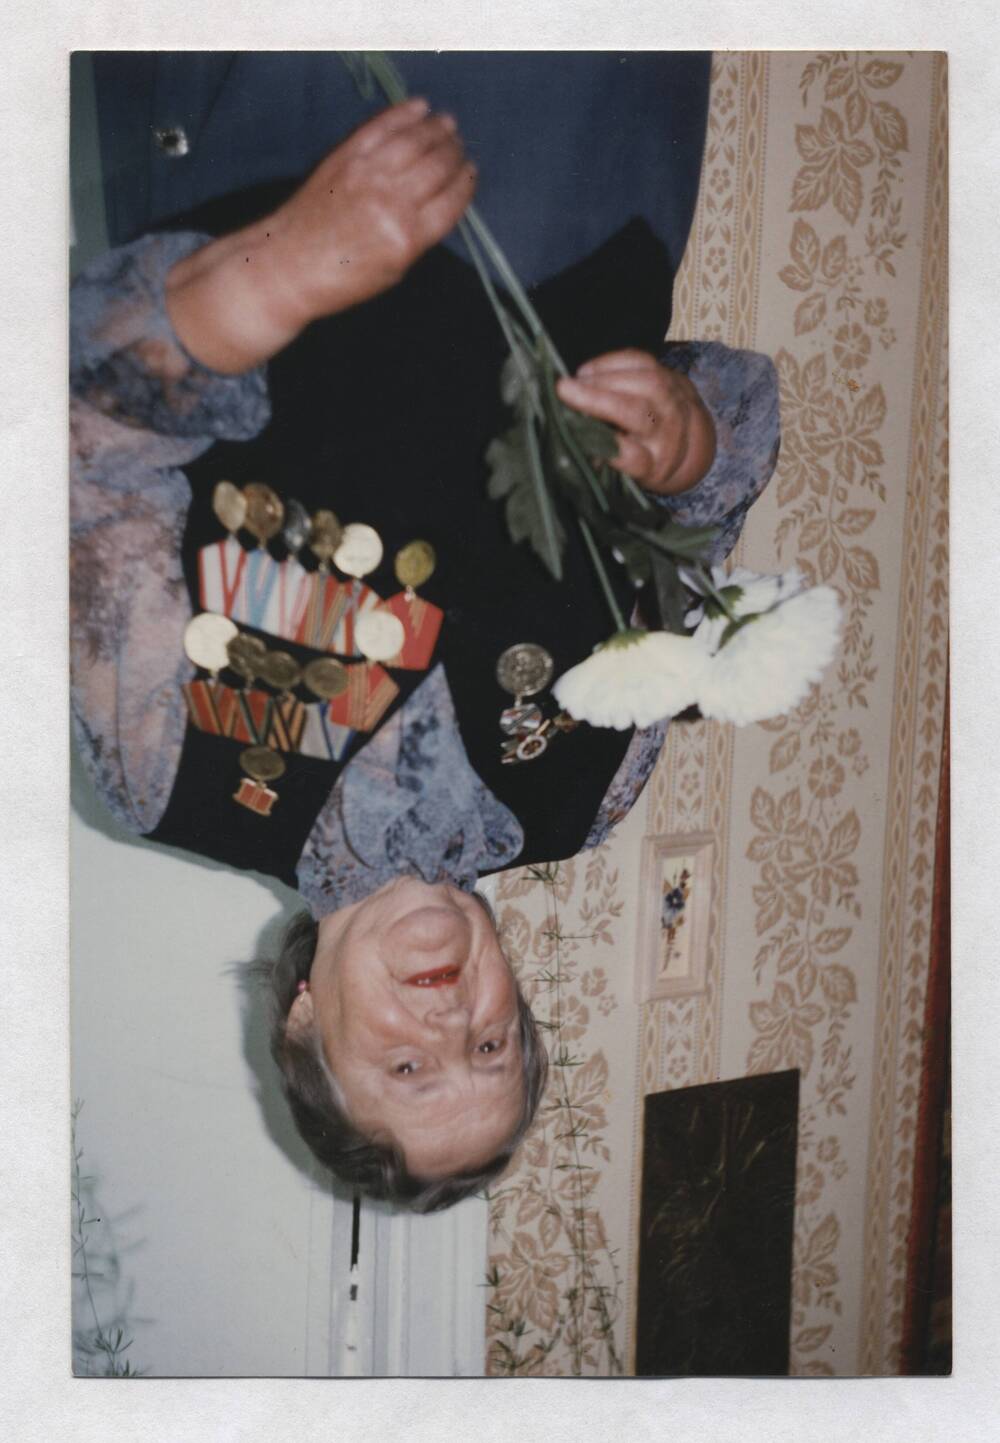 Фотография цветная. Изображена Степанцова М.А., стоящая в комнате с цветами в руках.